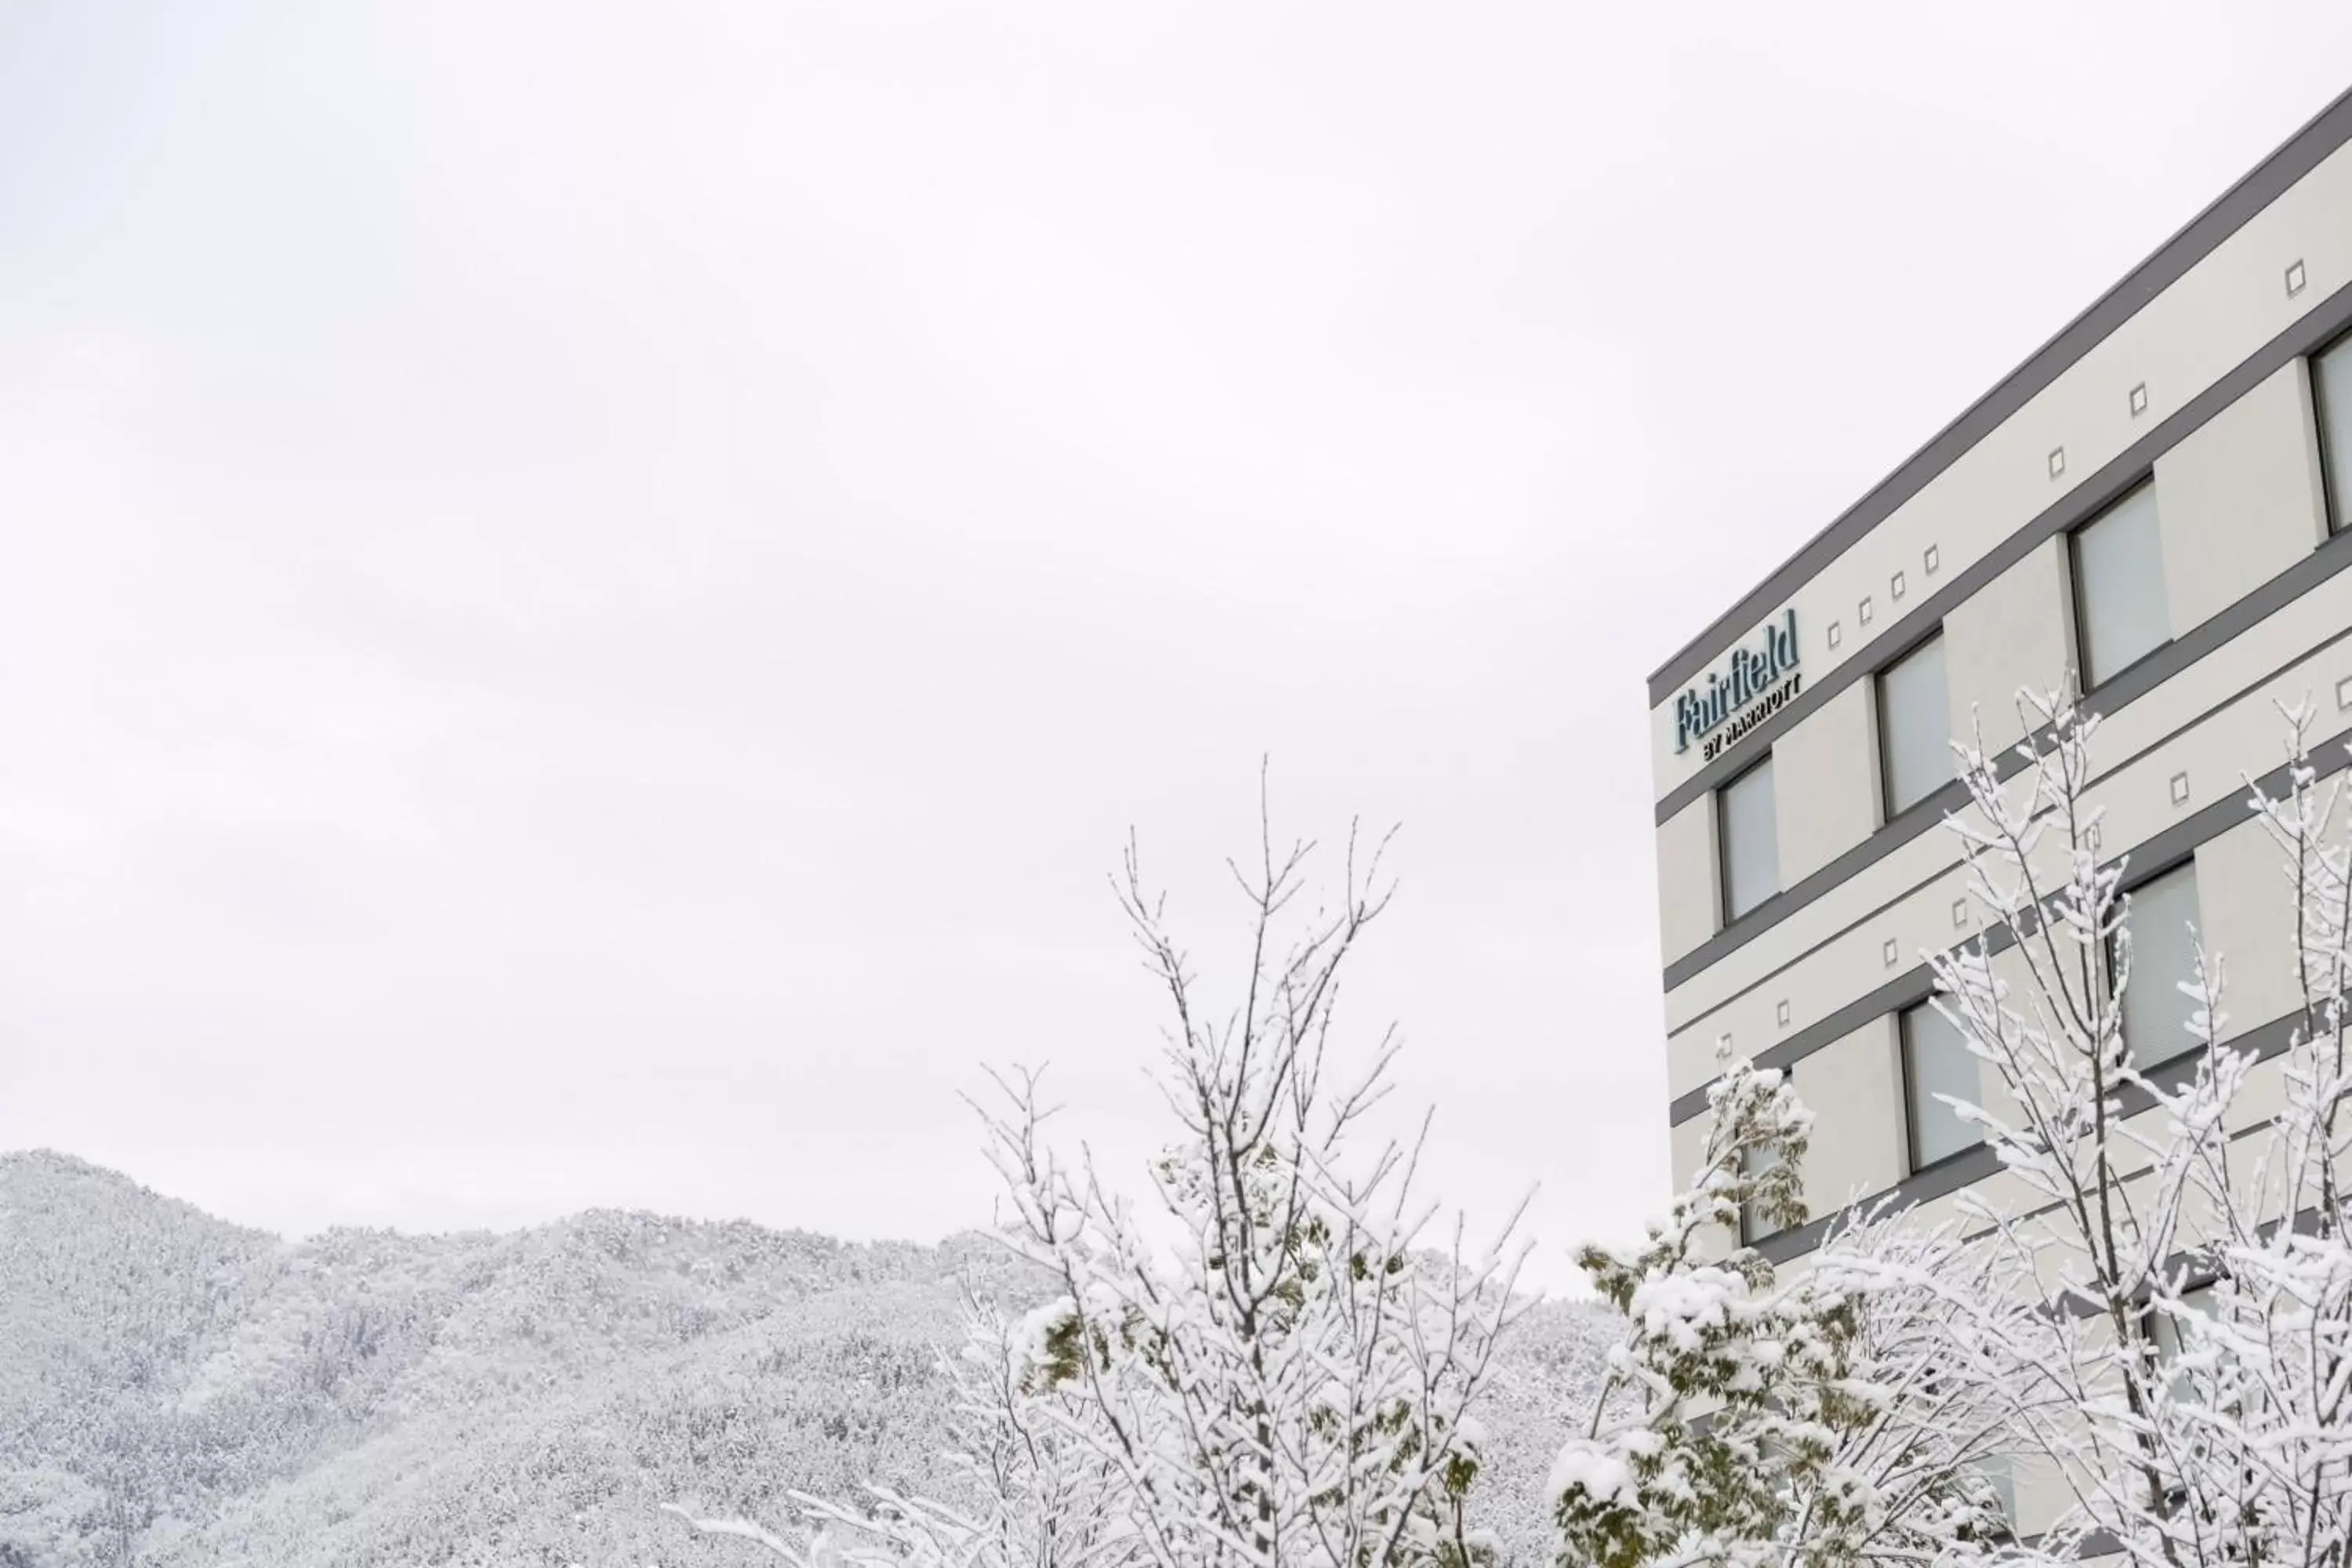 Property building, Winter in Fairfield by Marriott Hyogo Tajima Yabu